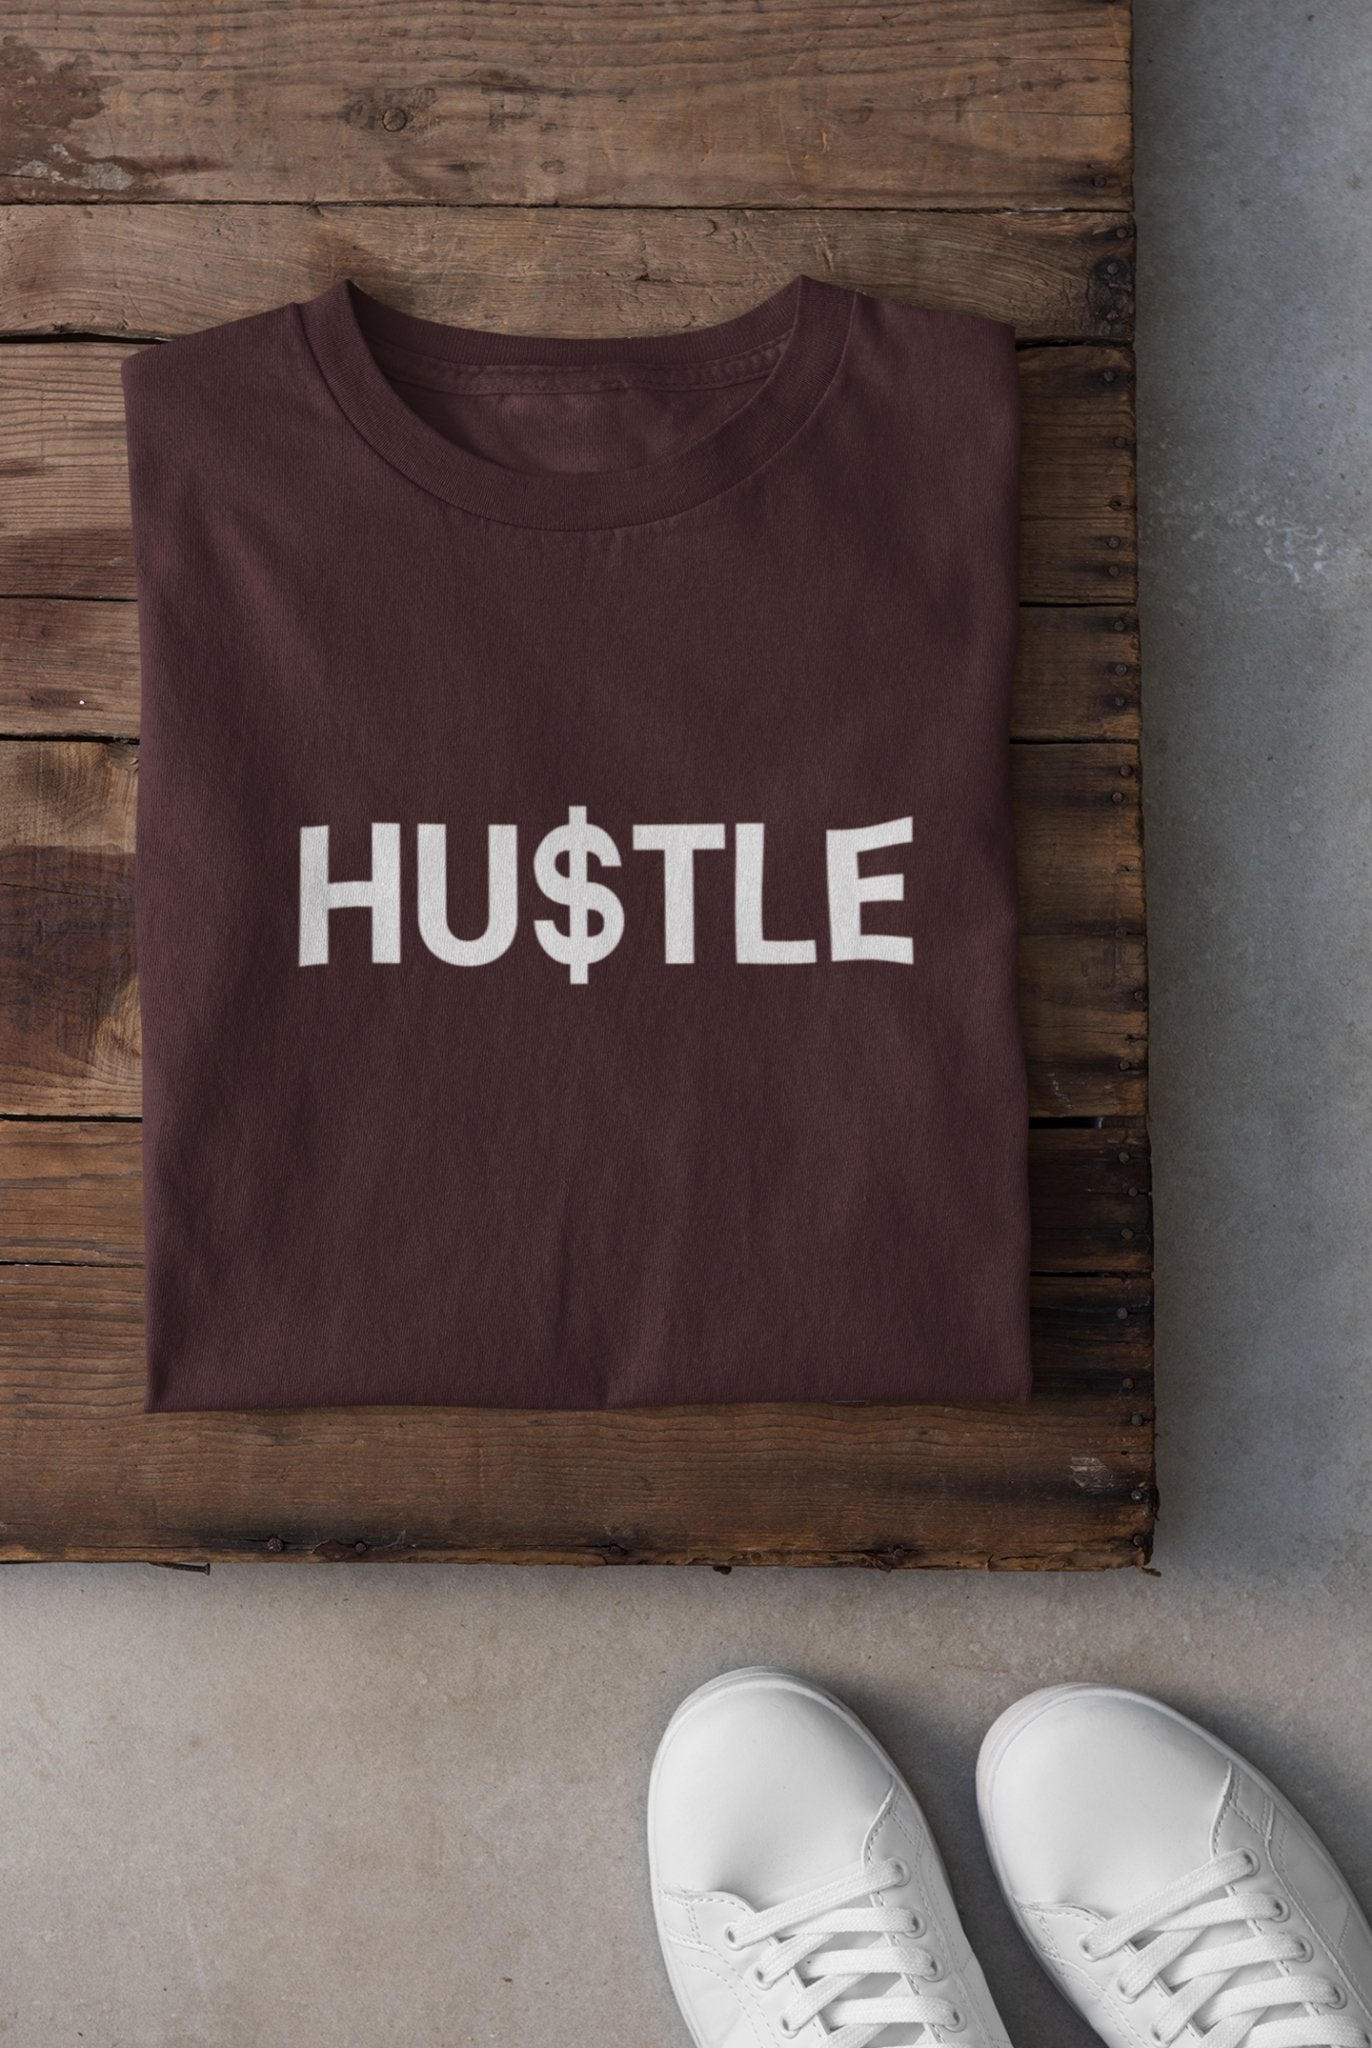 Hustle Teenpreneur Women Half Sleeves T-shirt- FunkyTeesClub - Funky Tees Club